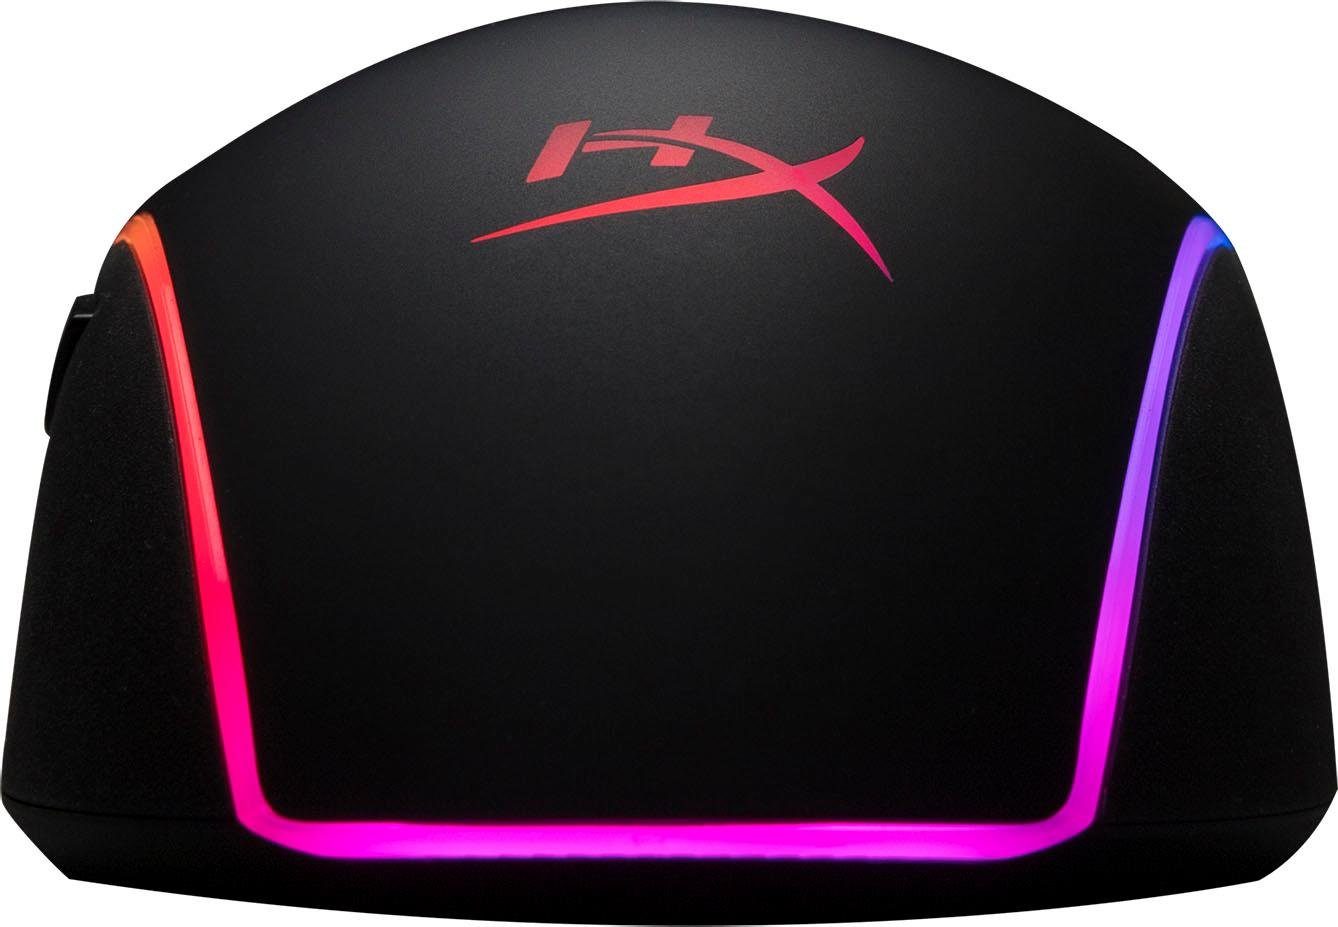 HyperX HyperX Pulsefire RGB Surge Gaming-Maus (kabelgebunden)